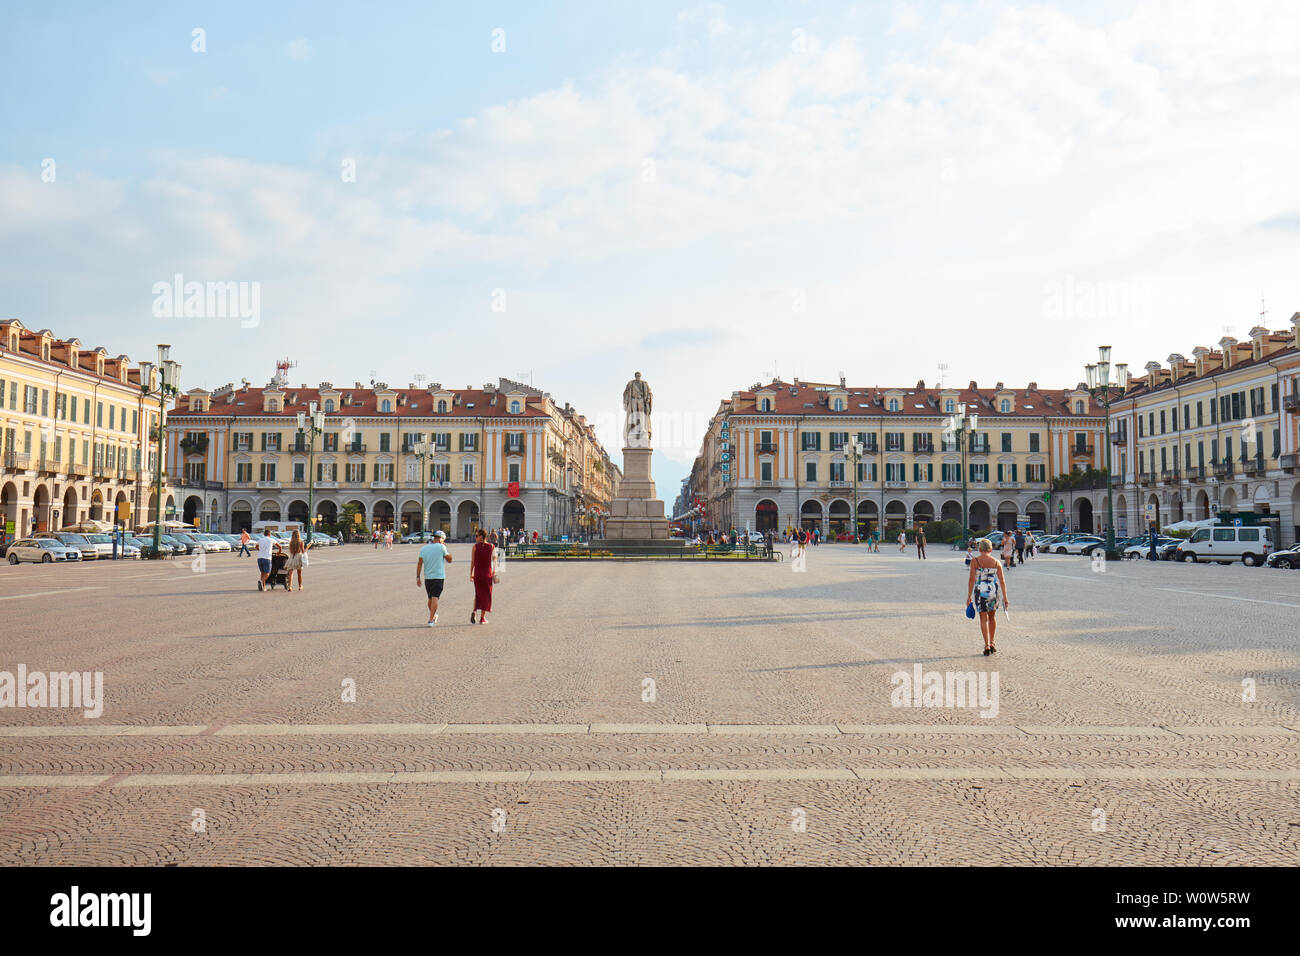 CUNEO, Italia - 13 agosto 2015: la famosa piazza Galimberti con la gente e la statua in una soleggiata giornata estiva, cielo blu in Cuneo, Italia. Foto Stock